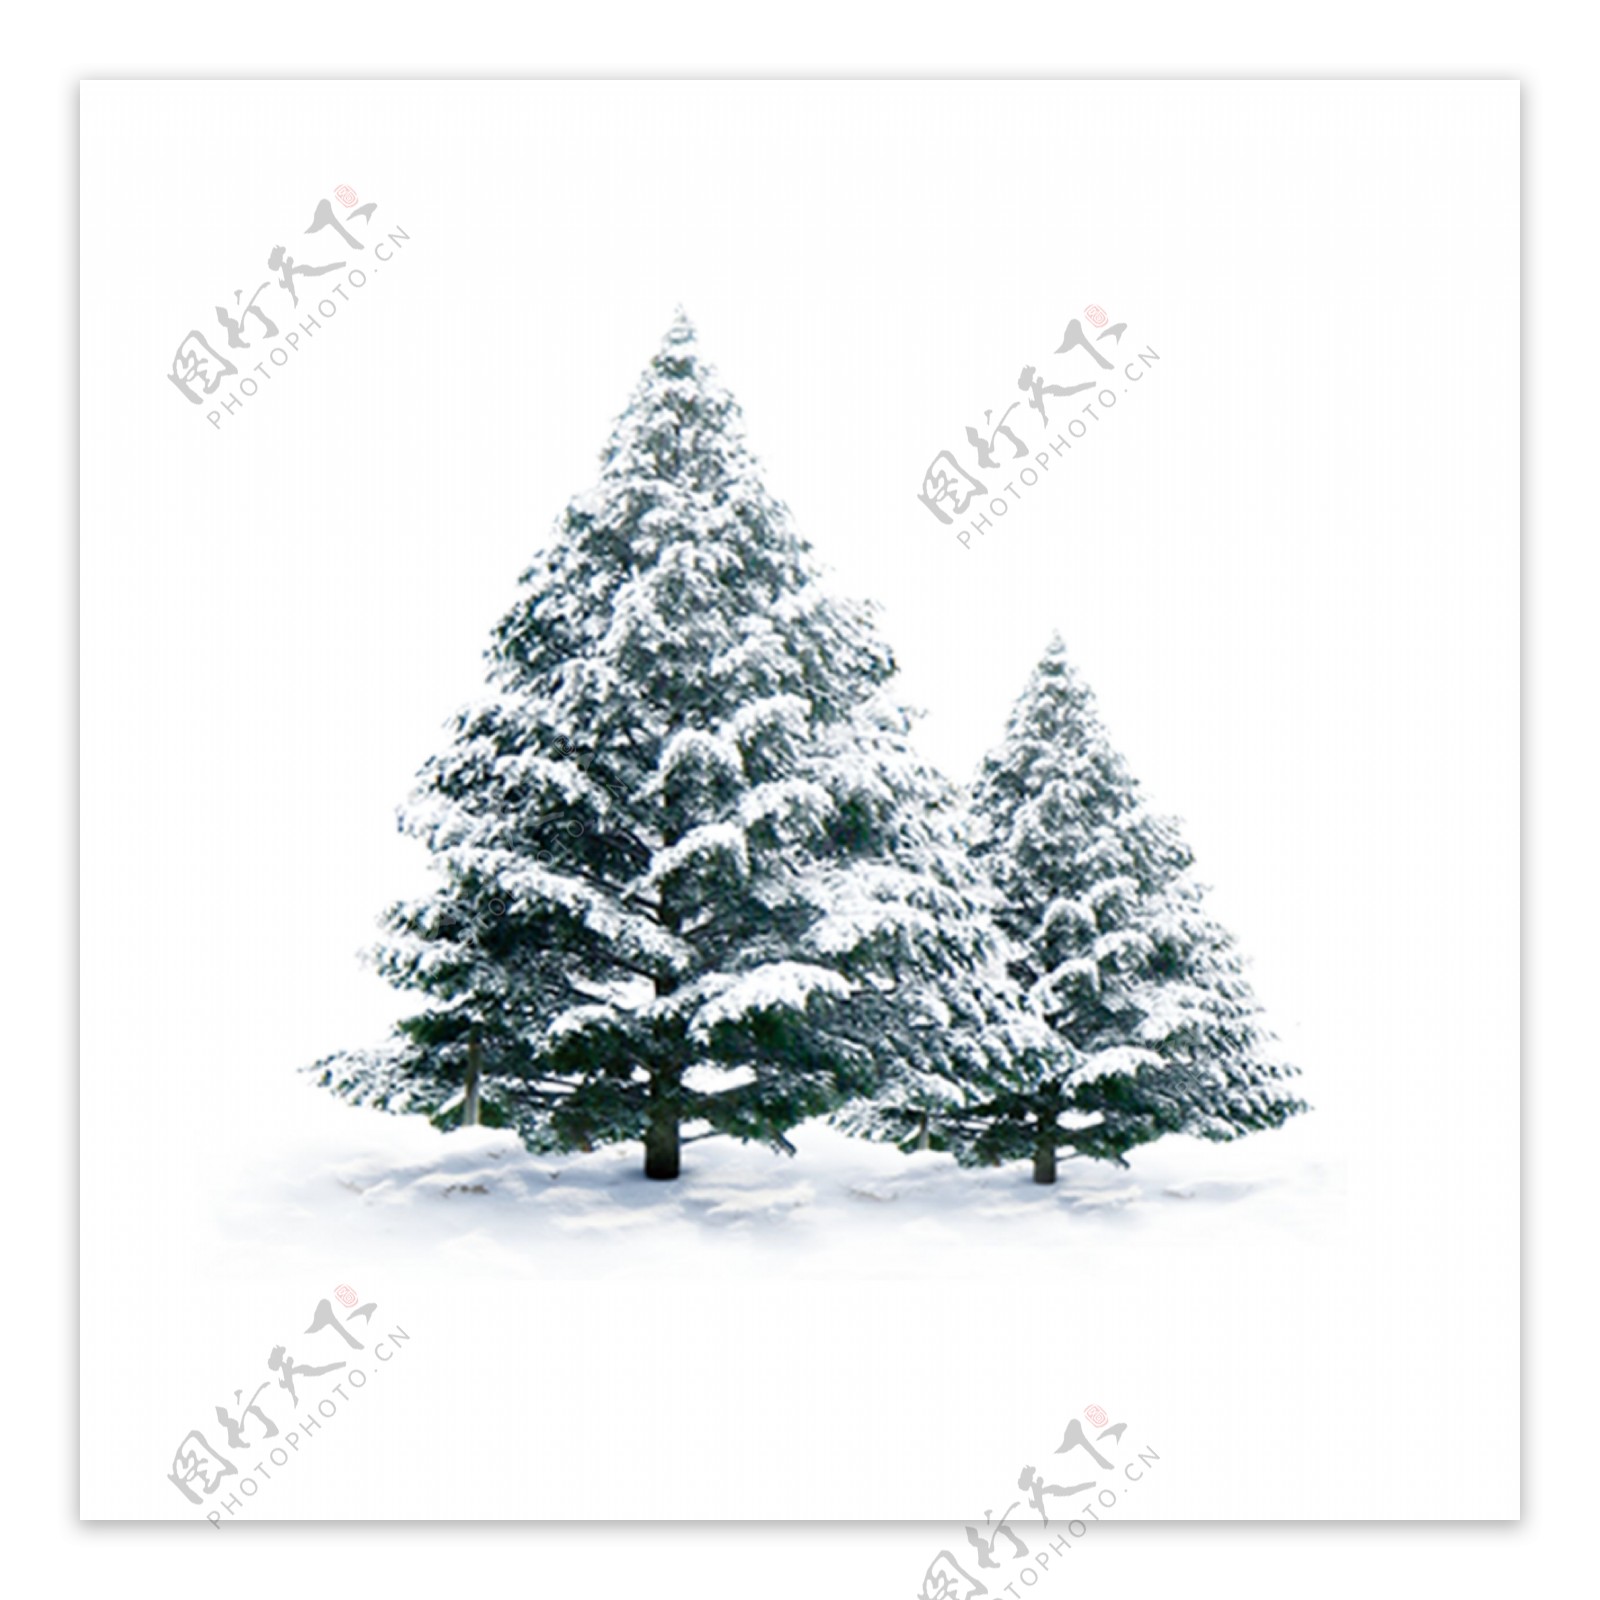 白雪盖松树png元素